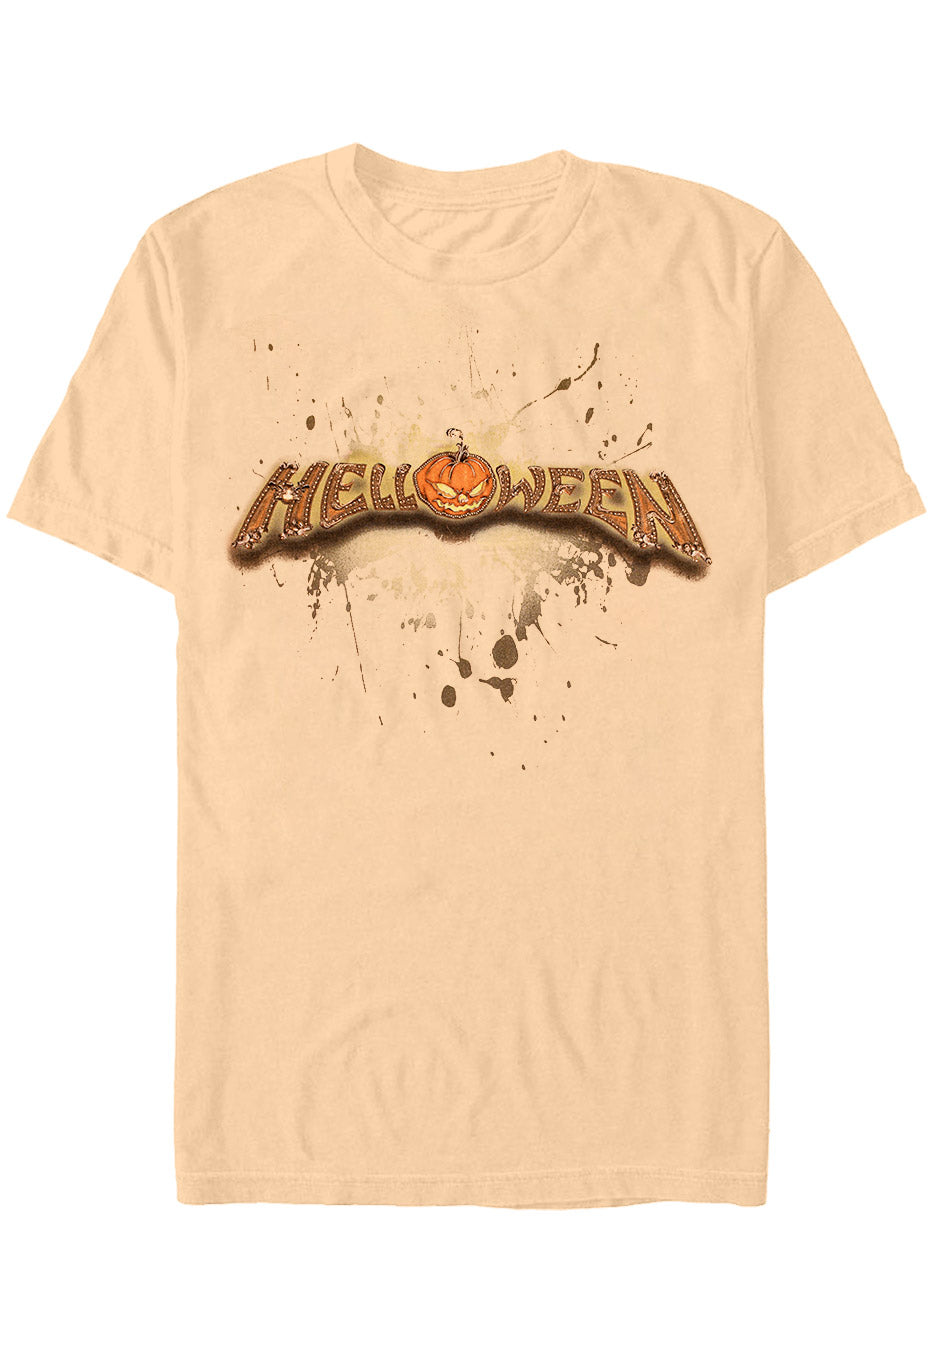 Helloween - Unarmed Sand - T-Shirt